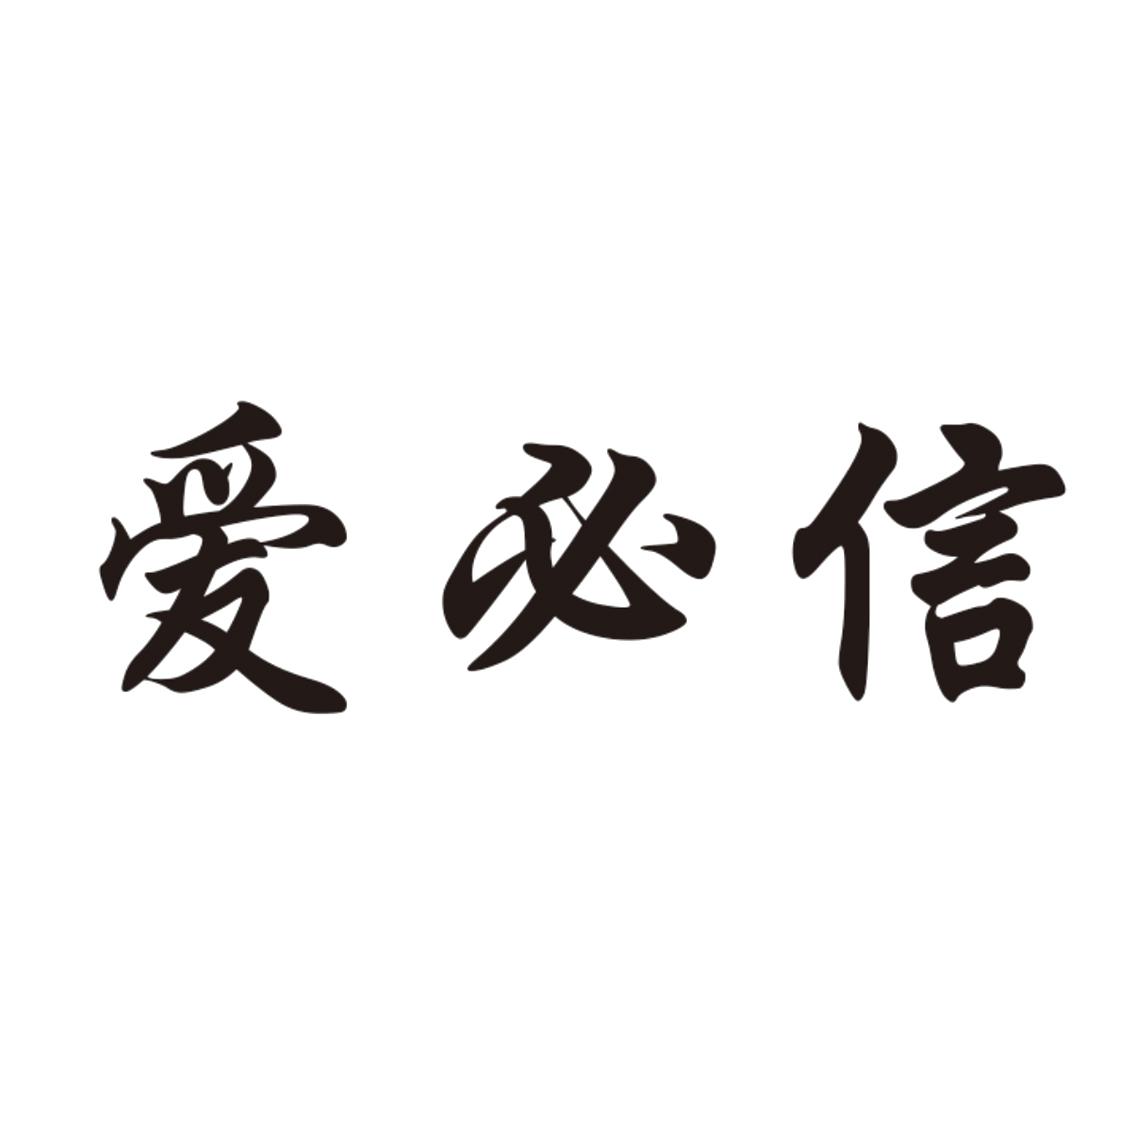 爱必信logo